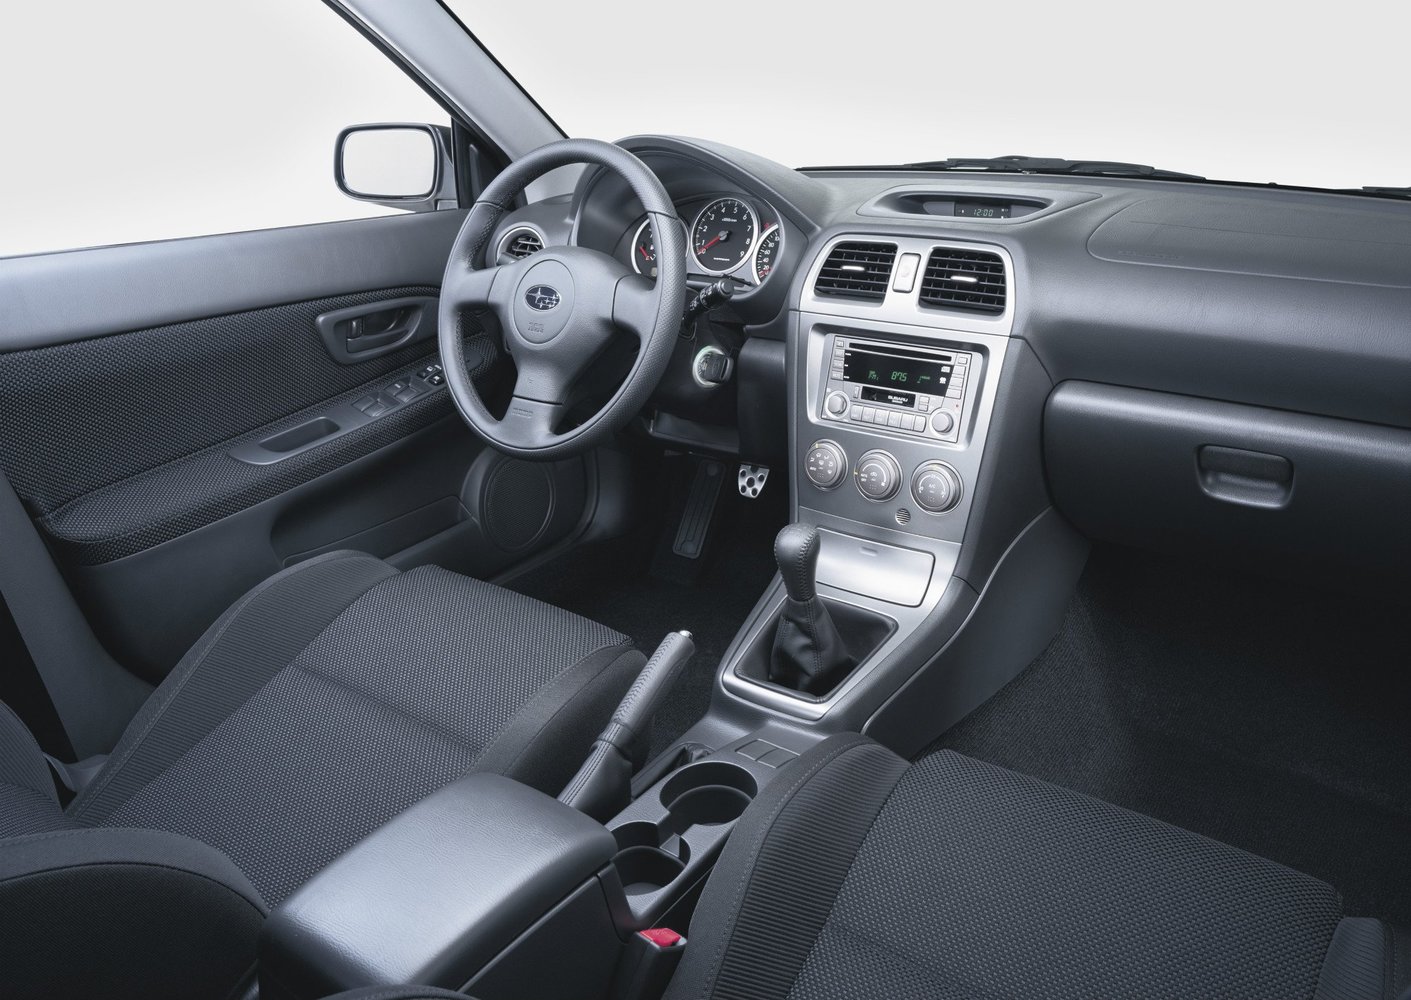 седан Subaru Impreza WRX 2002 - 2005г выпуска модификация 2.0 AT (225 л.с.) 4×4